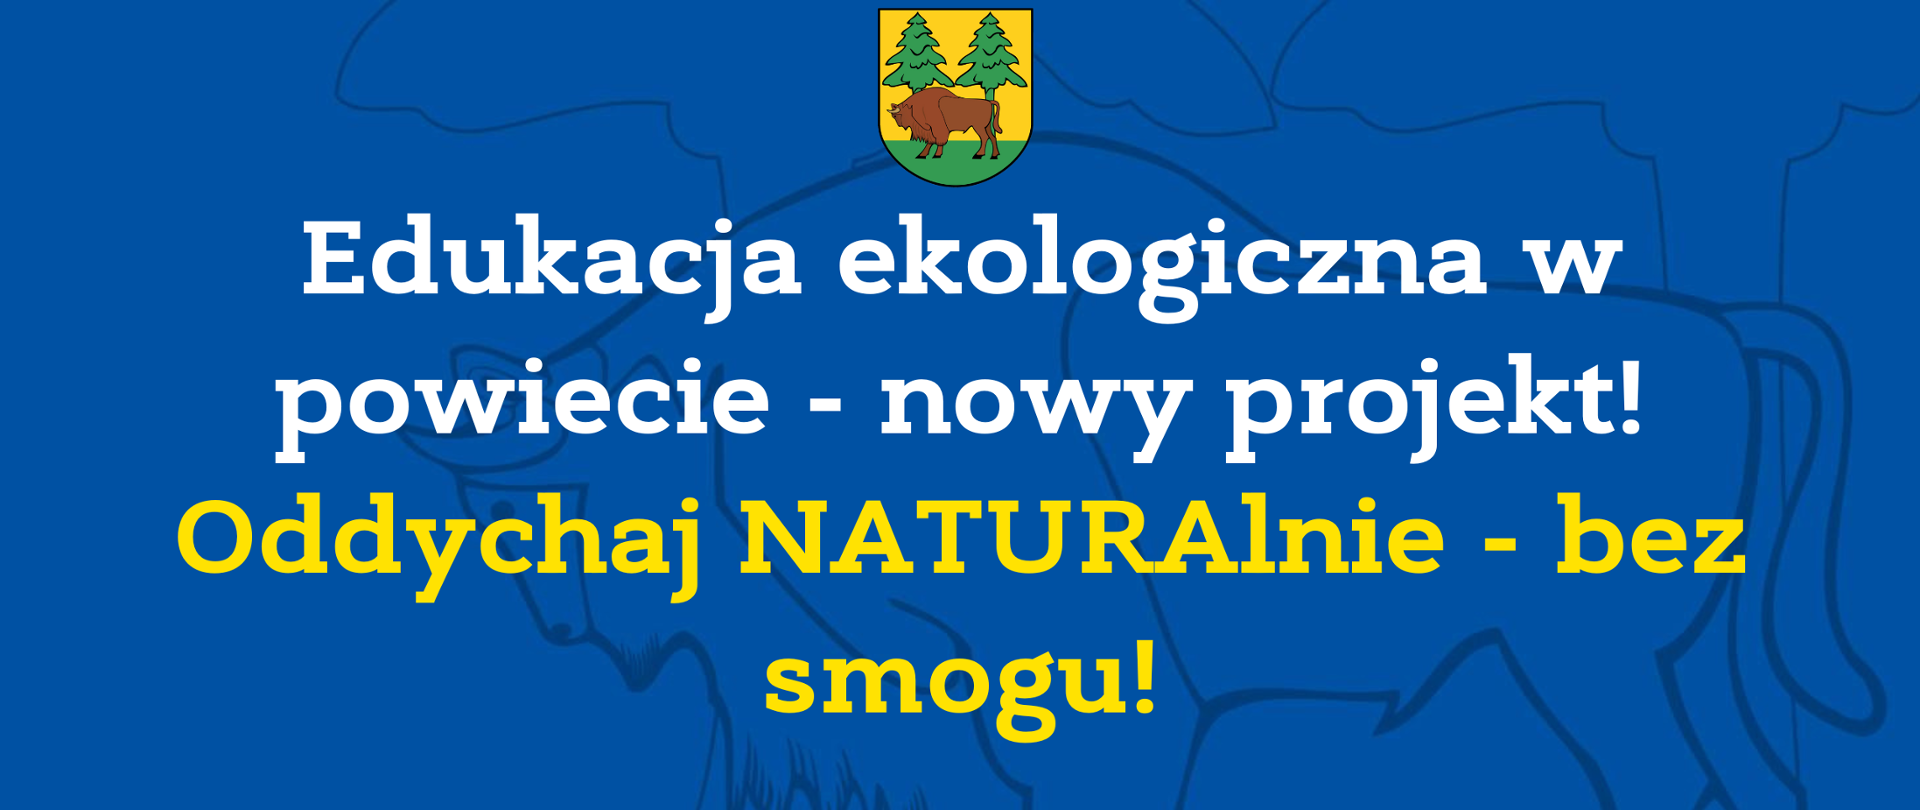 Edukacja ekologiczna w powiecie - nowy projekt!
Oddychaj NATURAlnie - bez smogu!